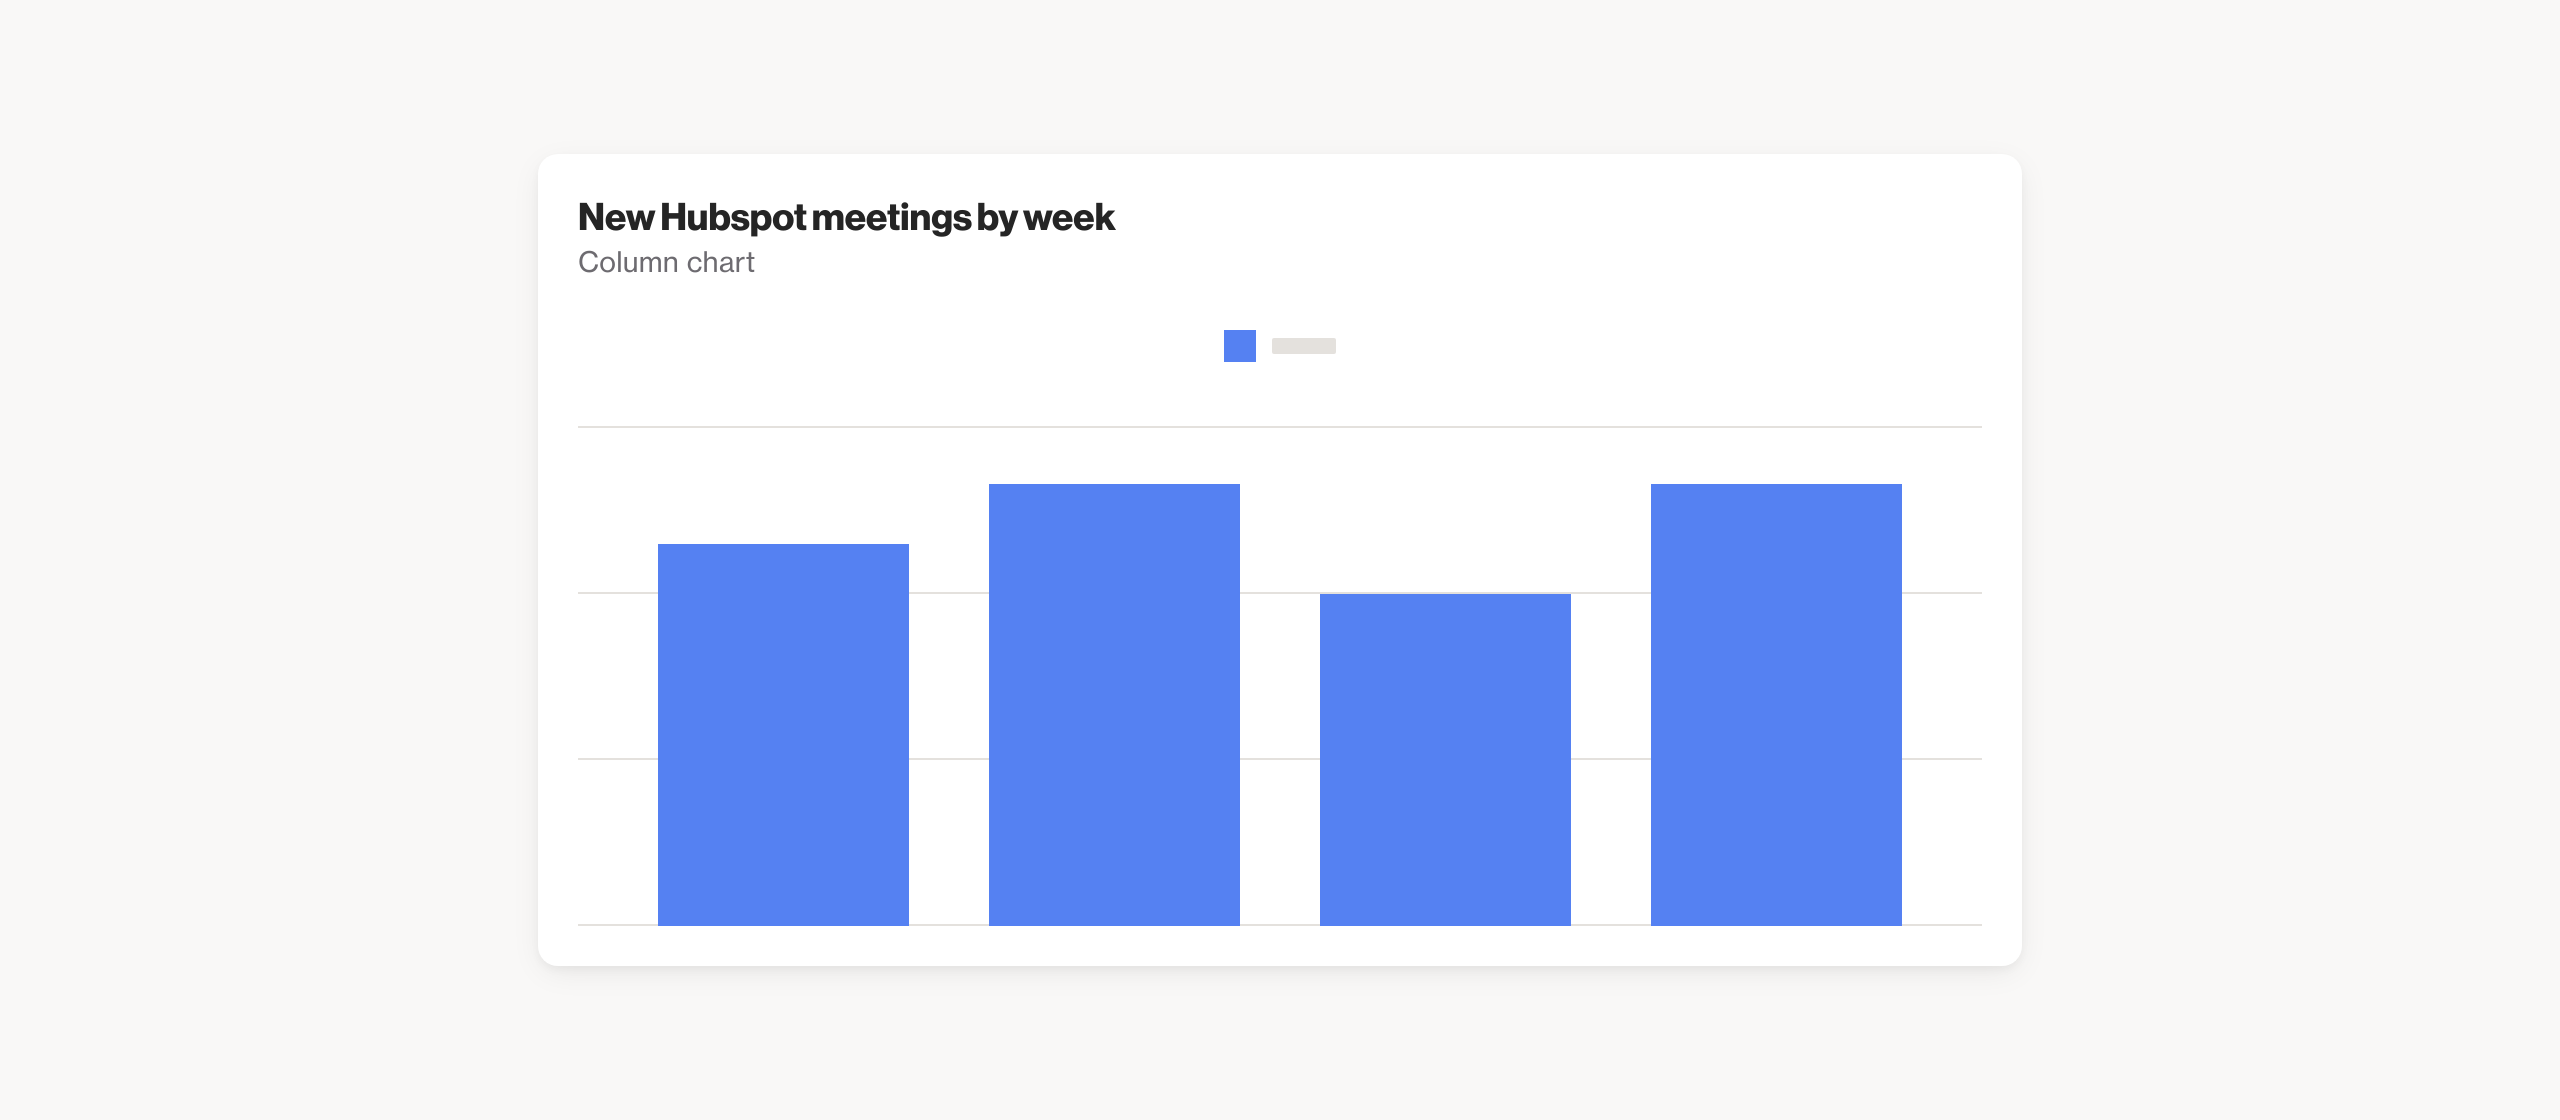 New Hubspot meetings by week